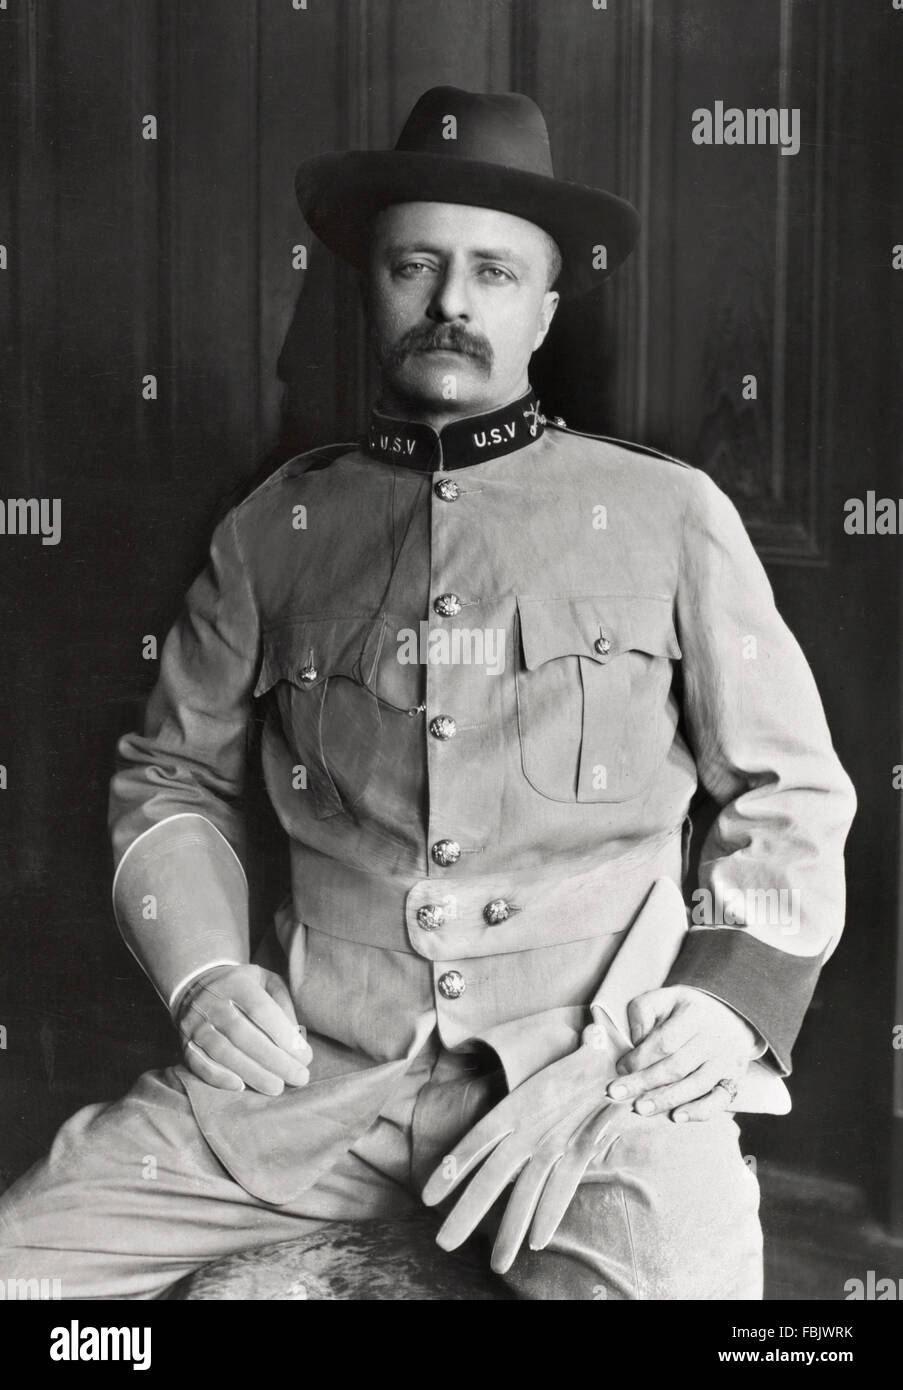 Lt Coronel Theodore Roosevelt, el 26º Presidente de los Estados Unidos, en el uniforme del 1º regimiento de caballería de voluntarios de los Estados Unidos (The Rough Riders), 1898 Foto de stock